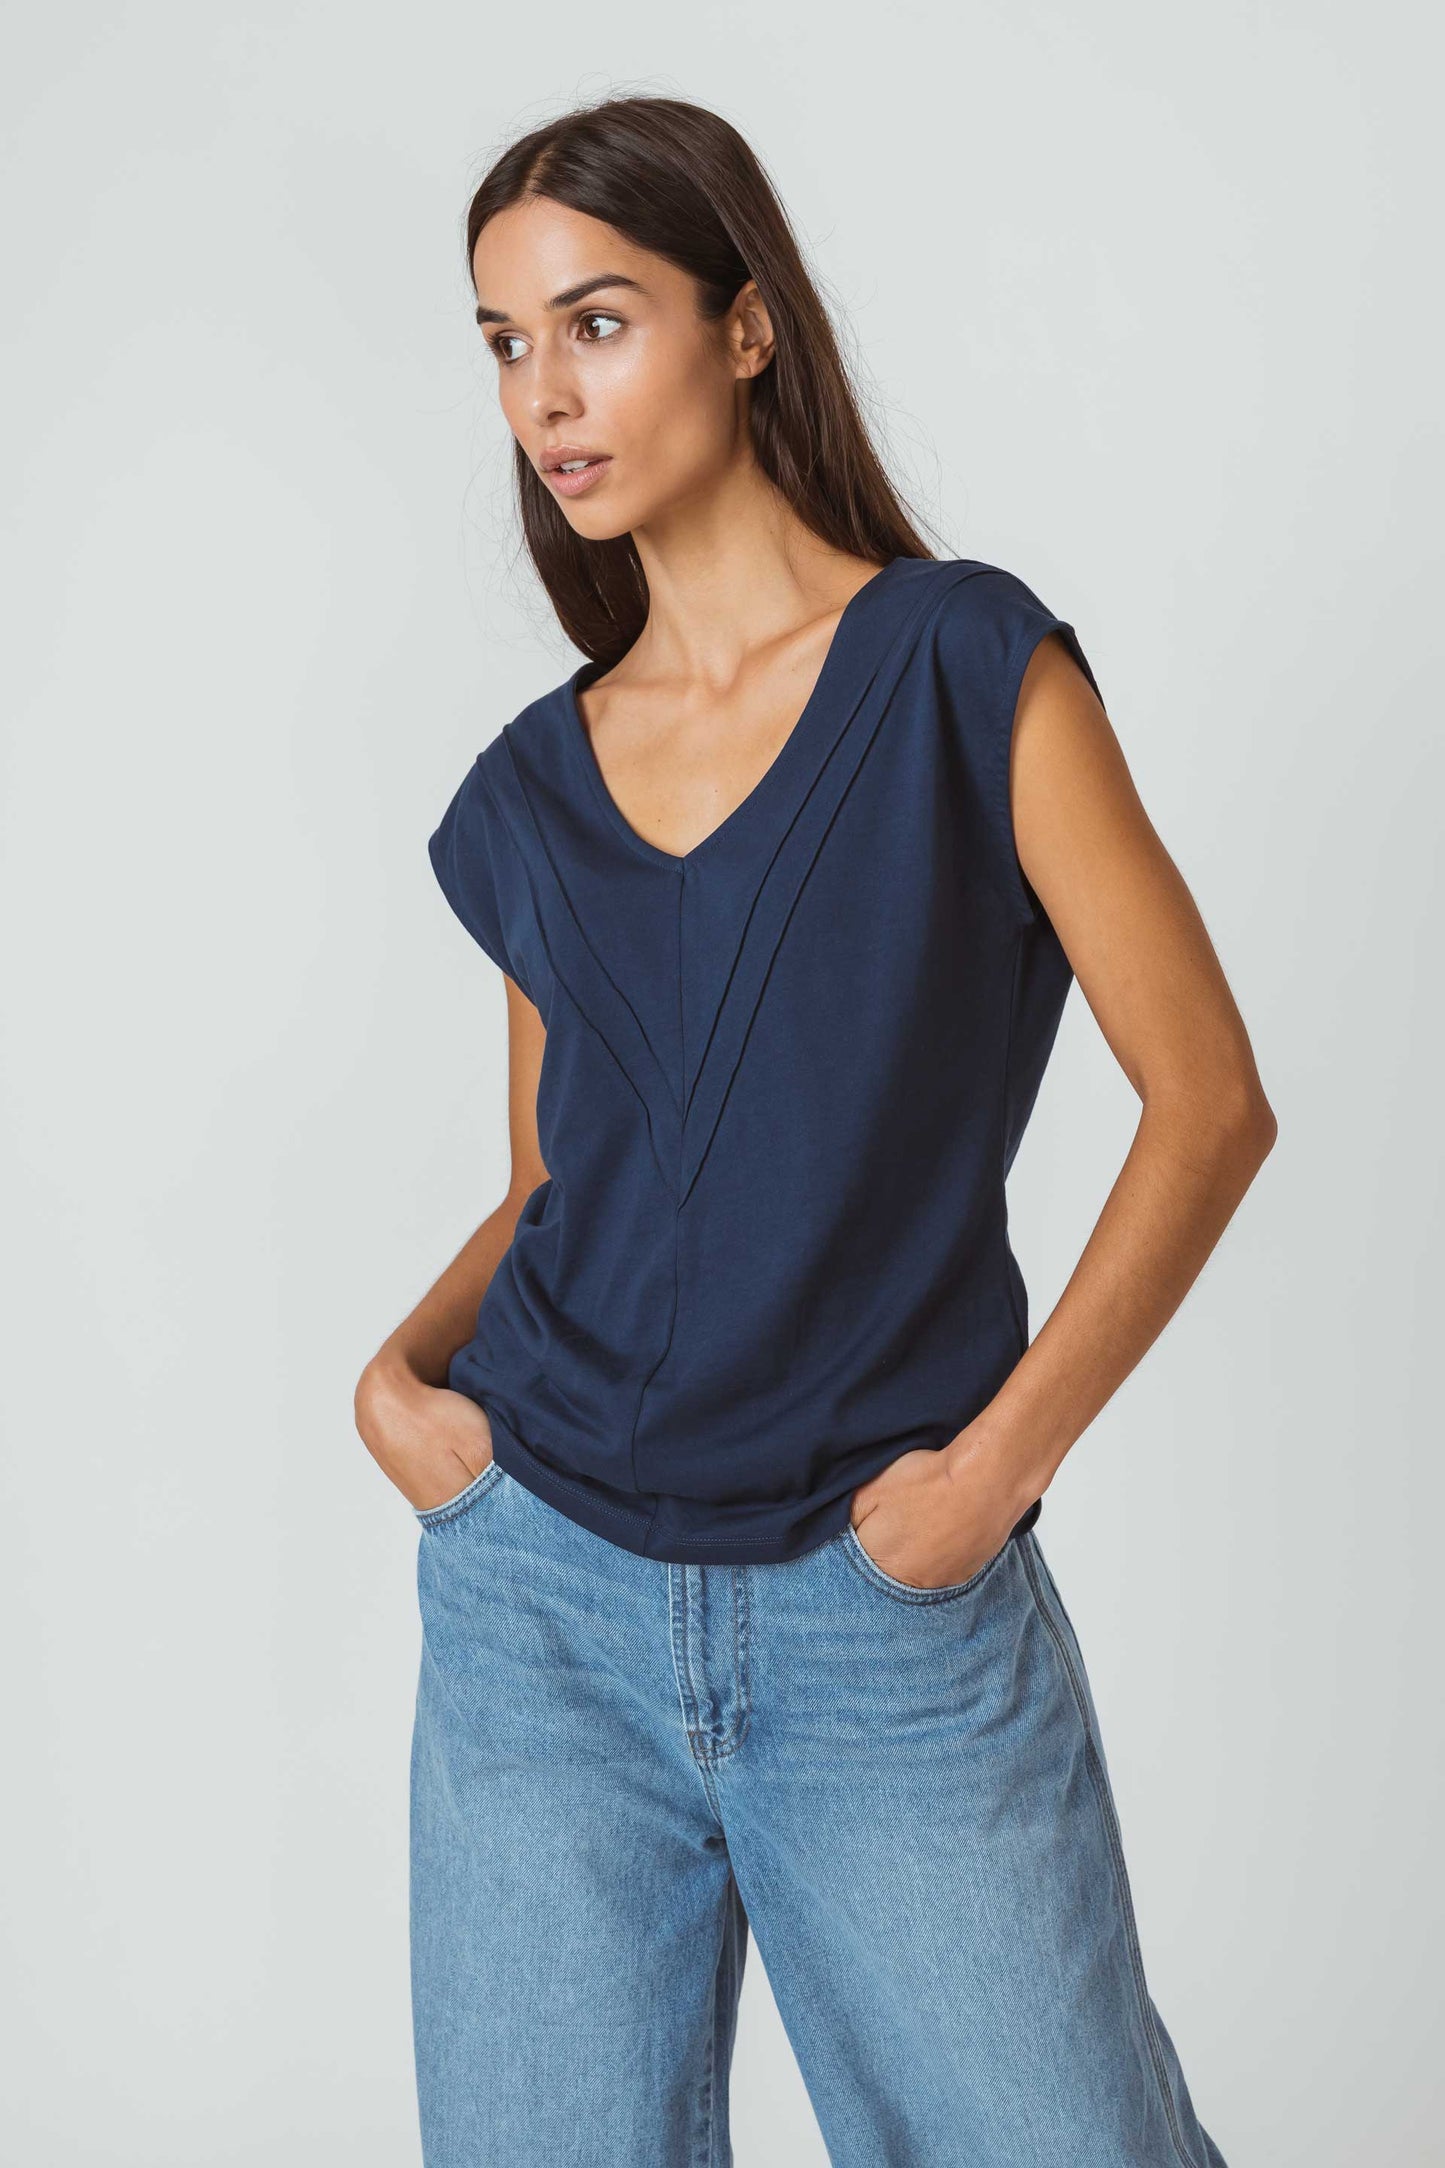 SKFK AMARITA Ärmelloses Oberteil mit V-Ausschnitt aus biologischer und recycelter Baumwolle (Women T-Shirt Navy)